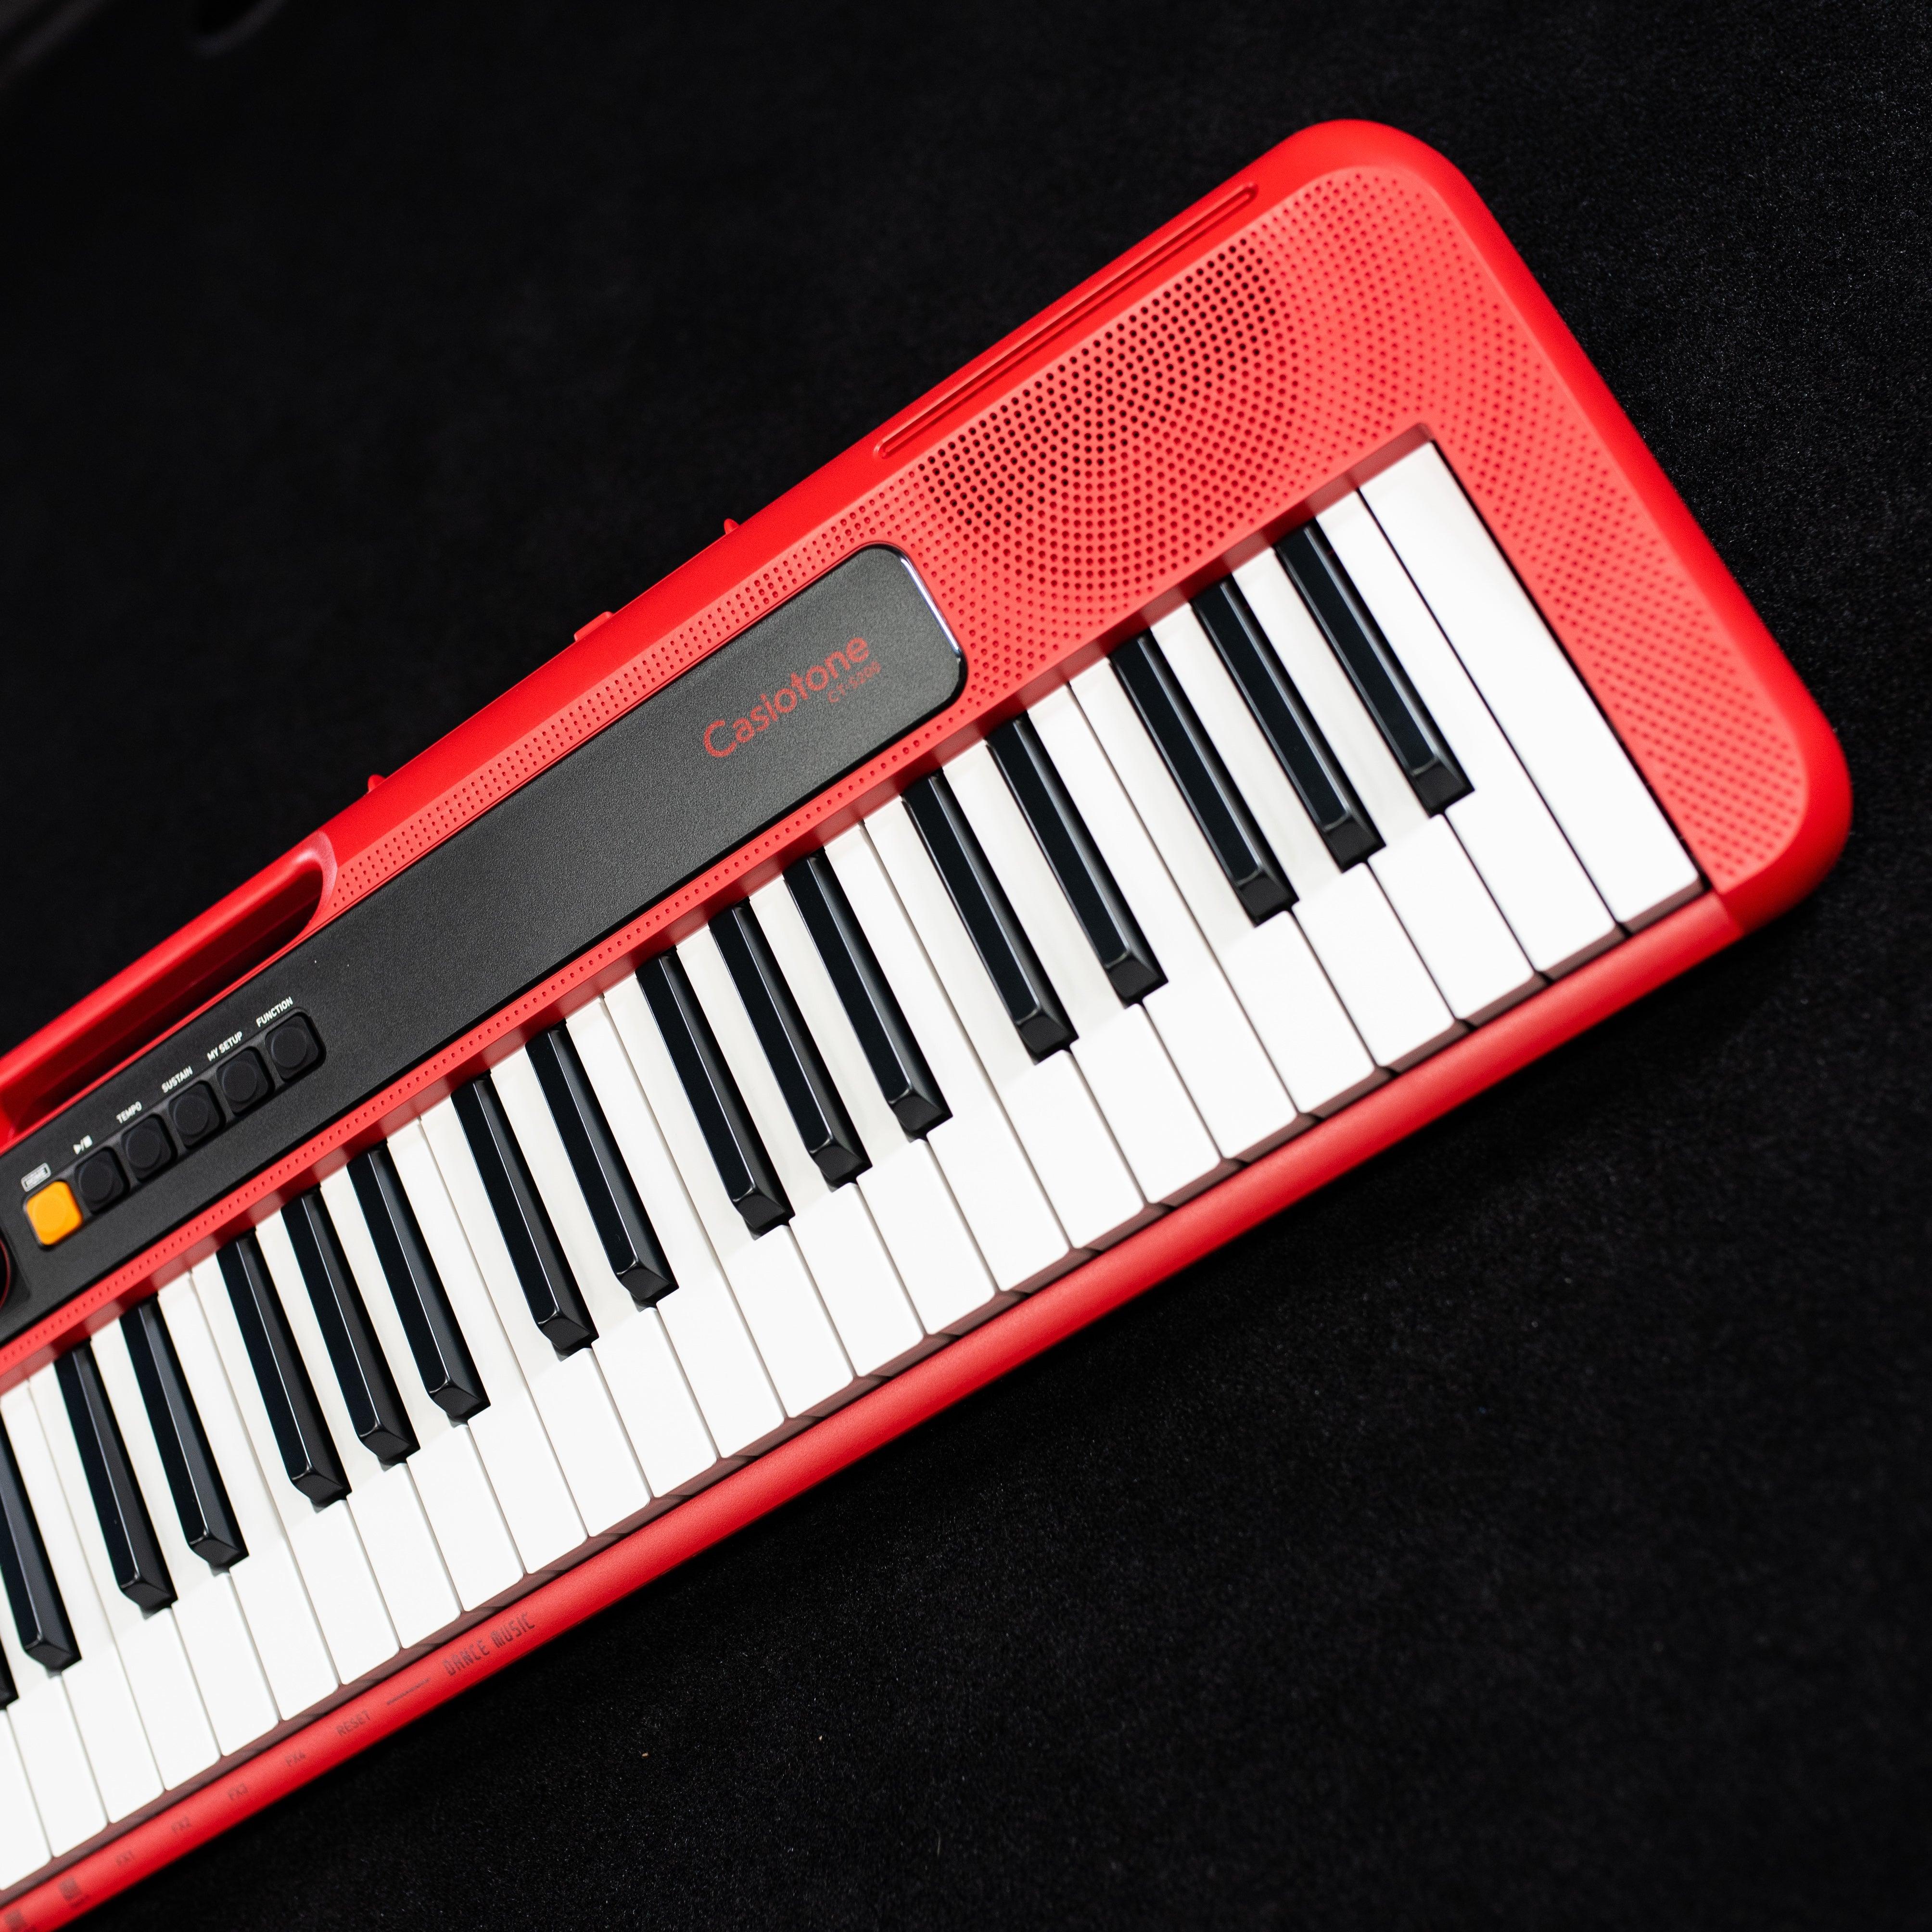 Casio Casiotone CT-S200 Digital Piano - Impulse Music Co.